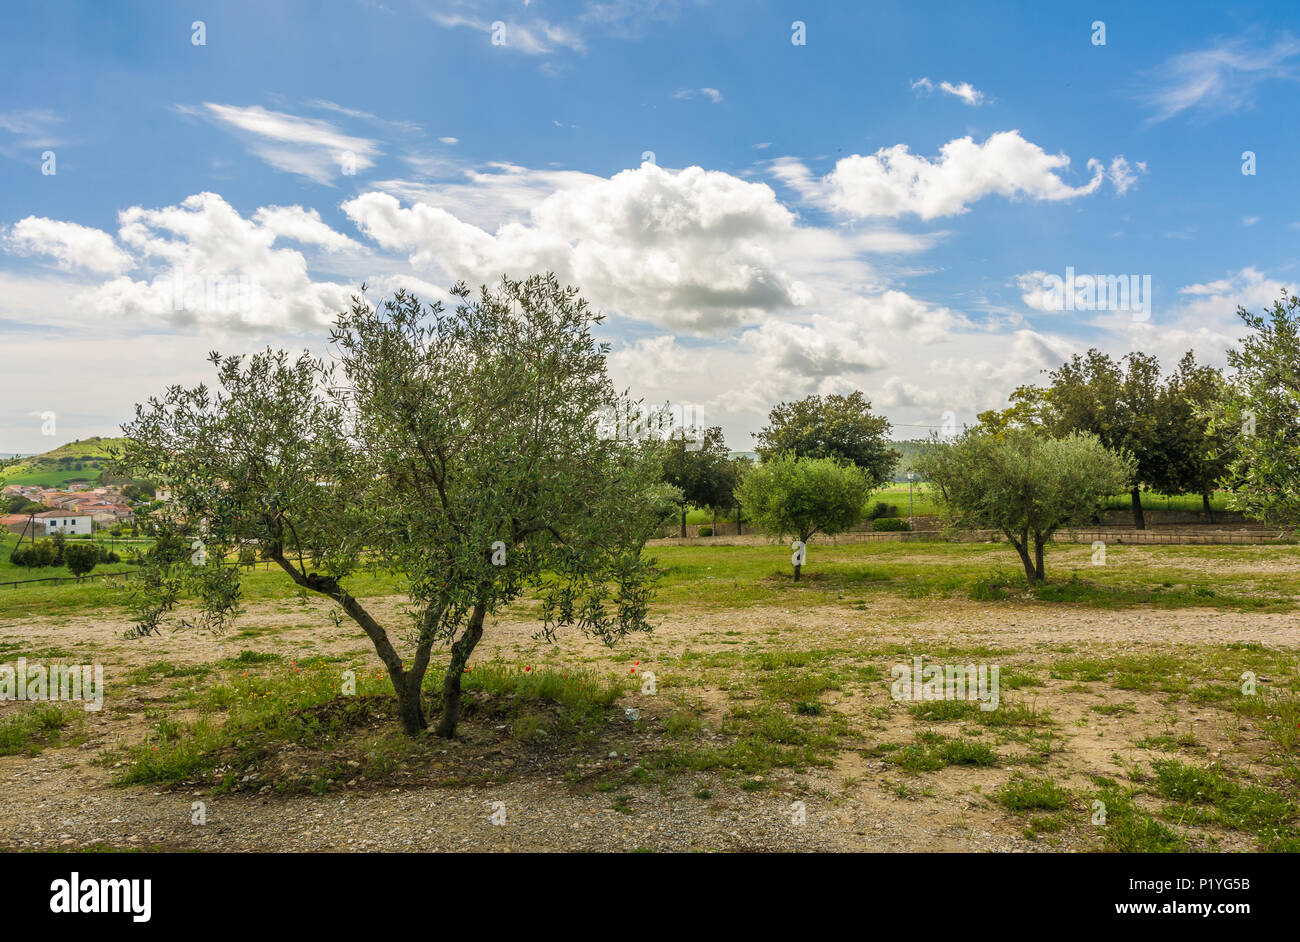 Vista de la región de Marmilla. Marmilla es una región natural del sur-central de Cerdeña, Italia. Foto de stock